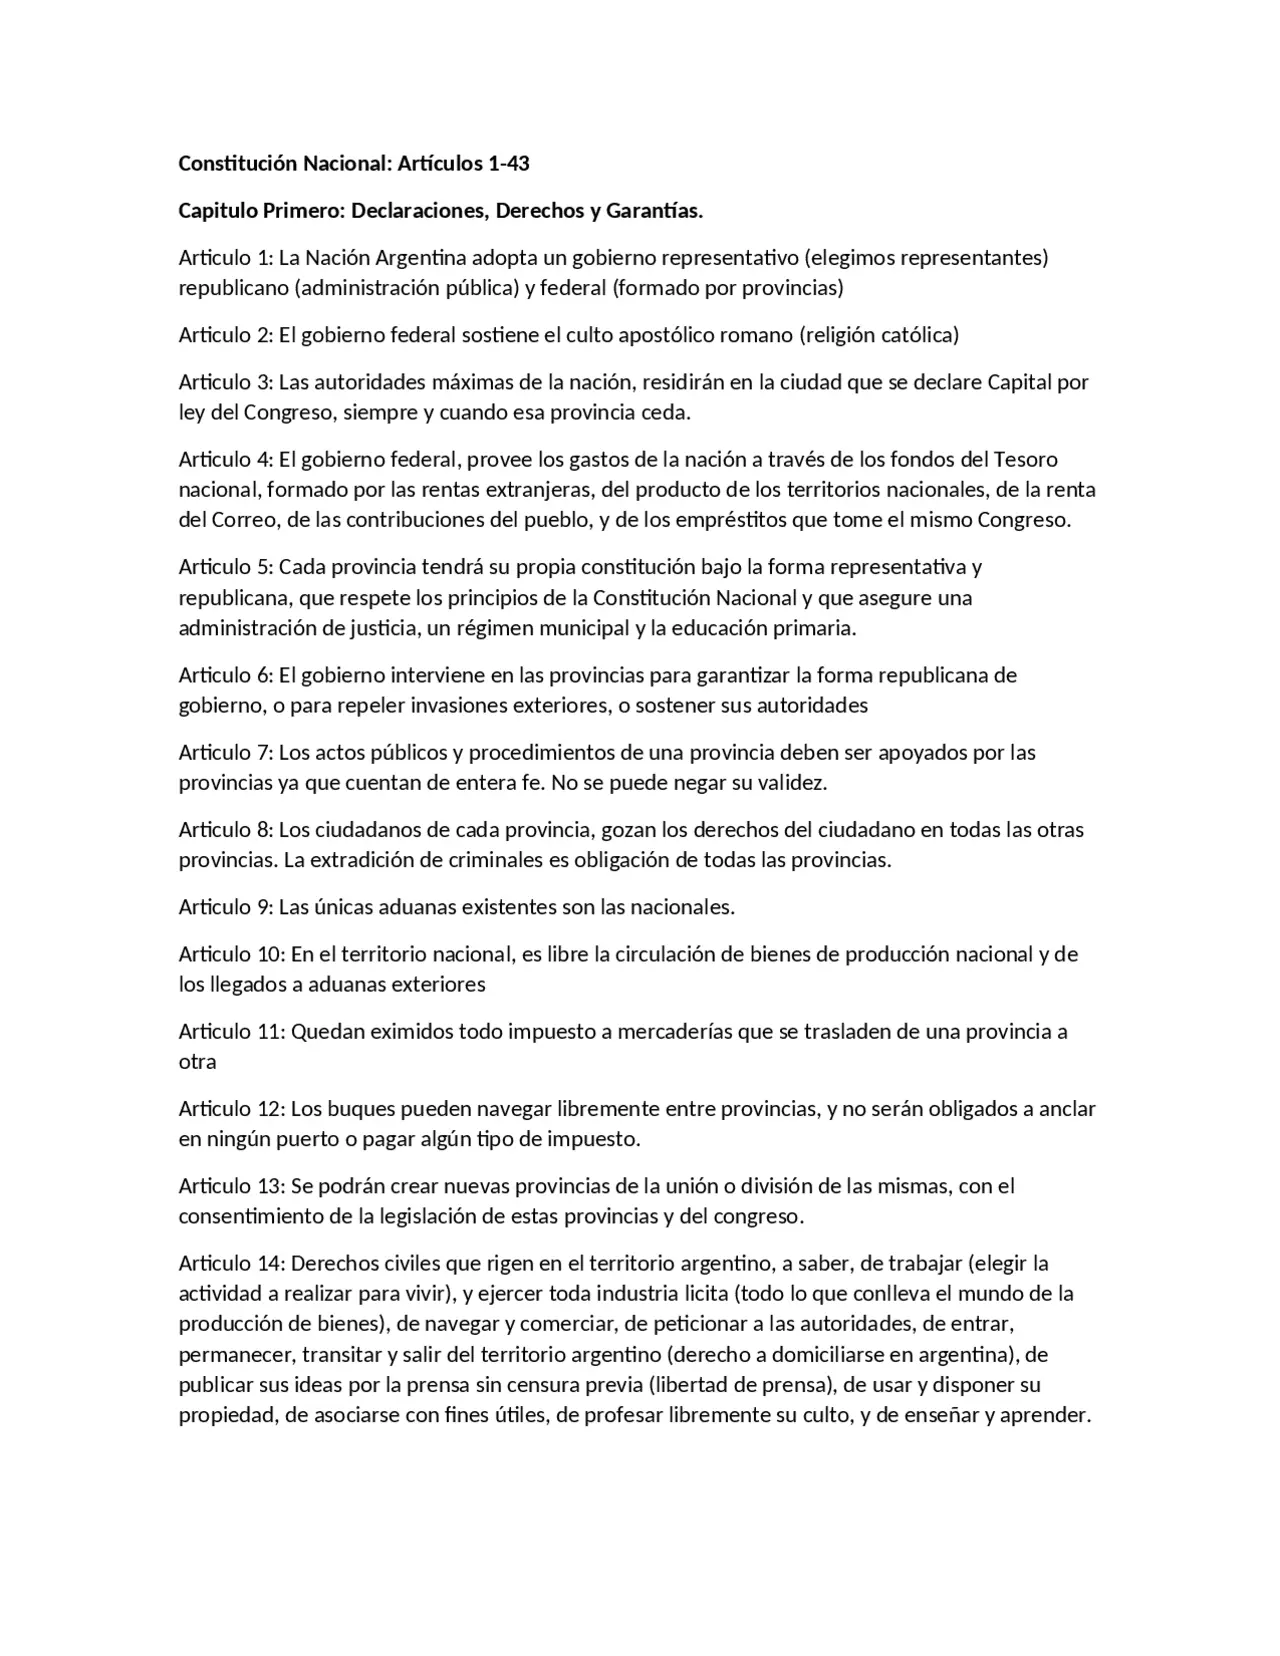 constitucion nacional resumen de los articulos - Qué quiere decir el artículo 4 de la Constitución Nacional Argentina